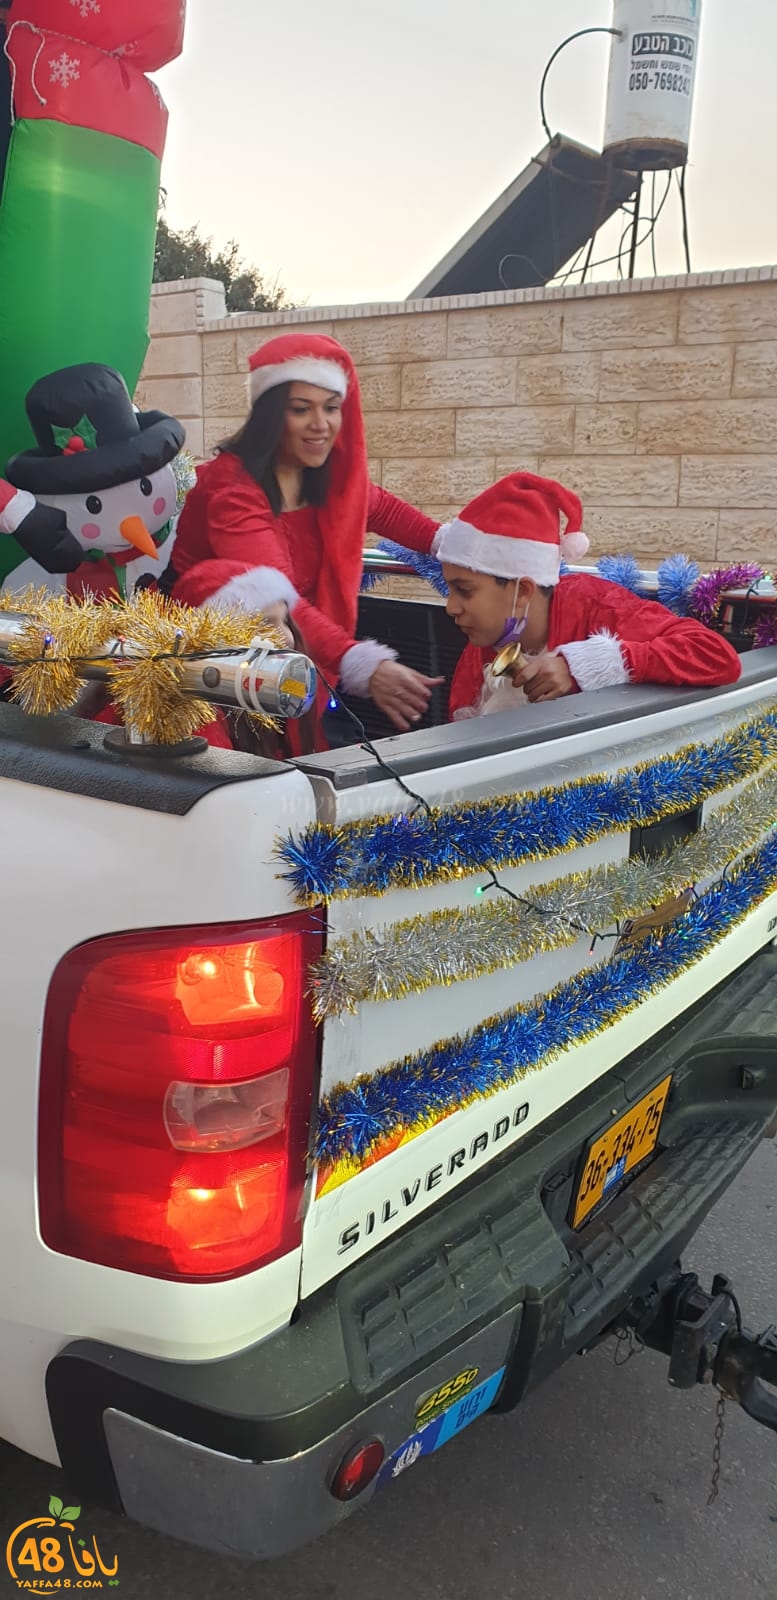  فيديو: قافلة احتفالية تجوب شوارع مدينة يافا بمناسبة عيد الميلاد المجيد 